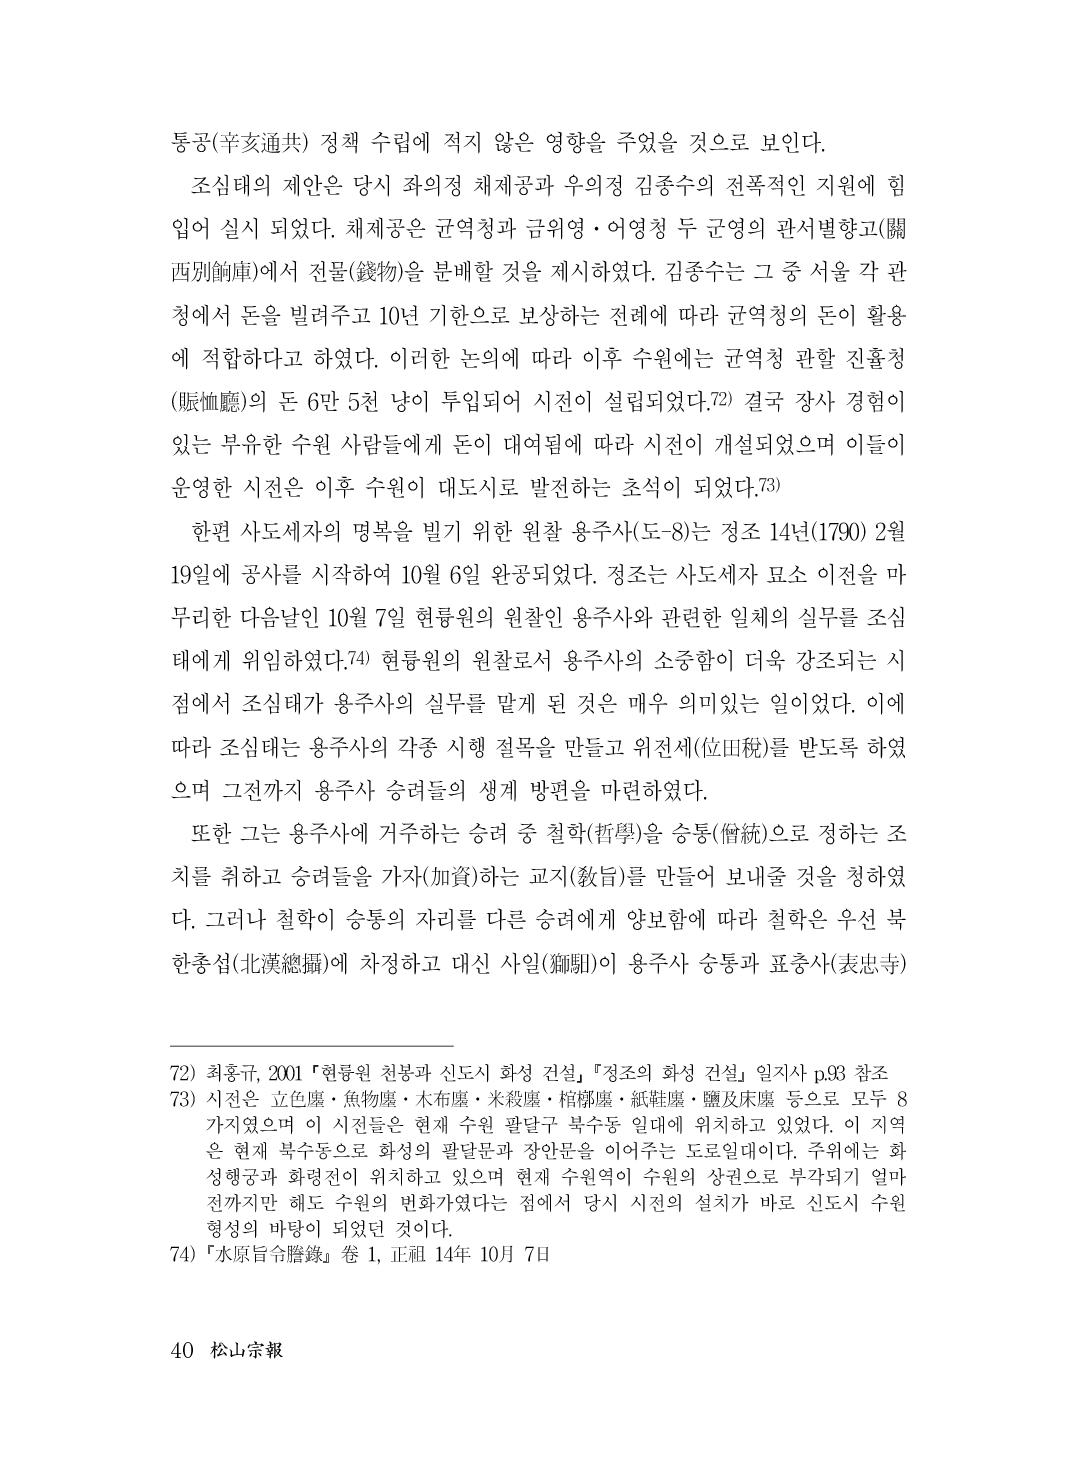 (전체) 송산종보(27호)(최종)_41.jpg